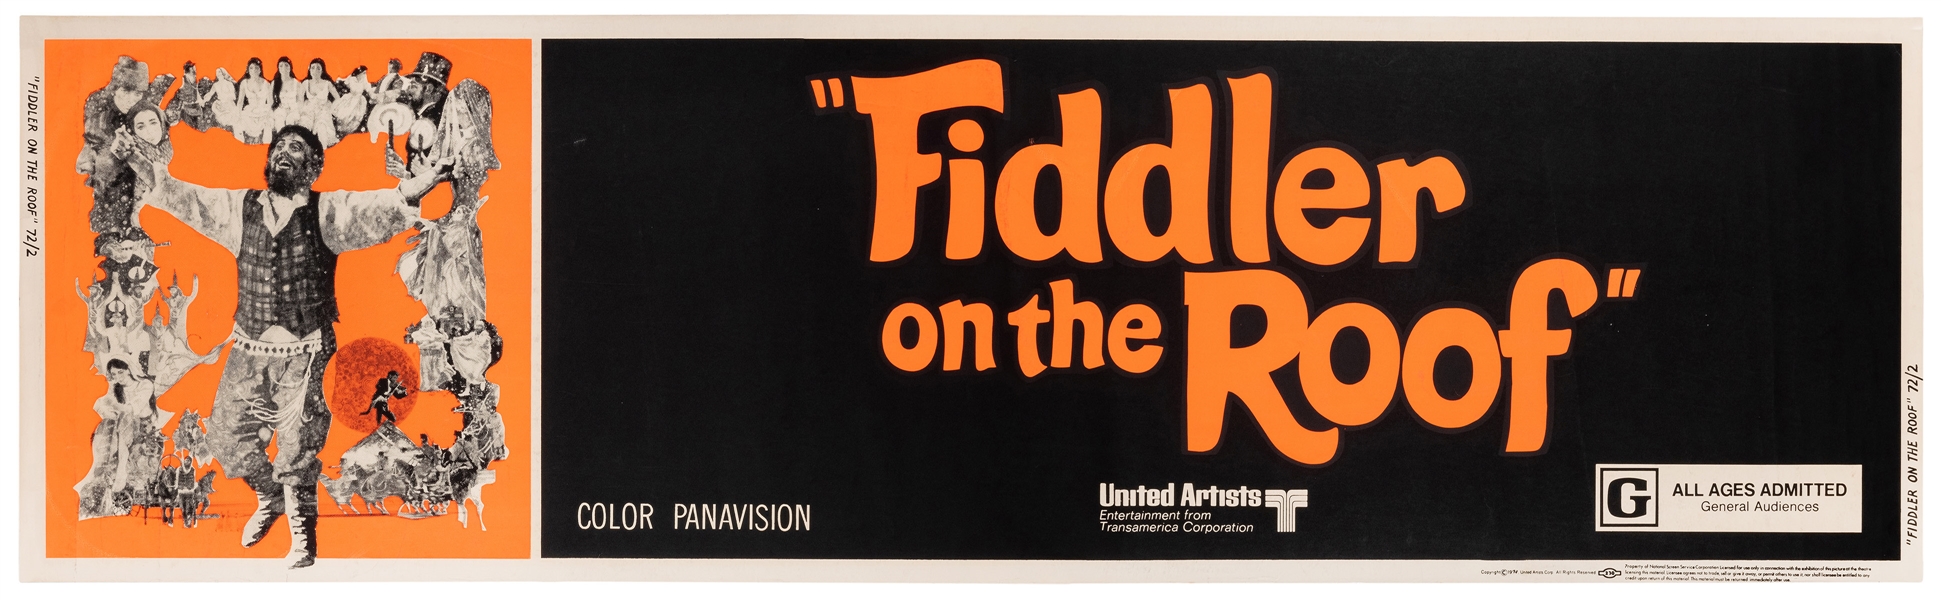  Fiddler on the Roof. United Artists, 1972. Silkscreen. Musi...